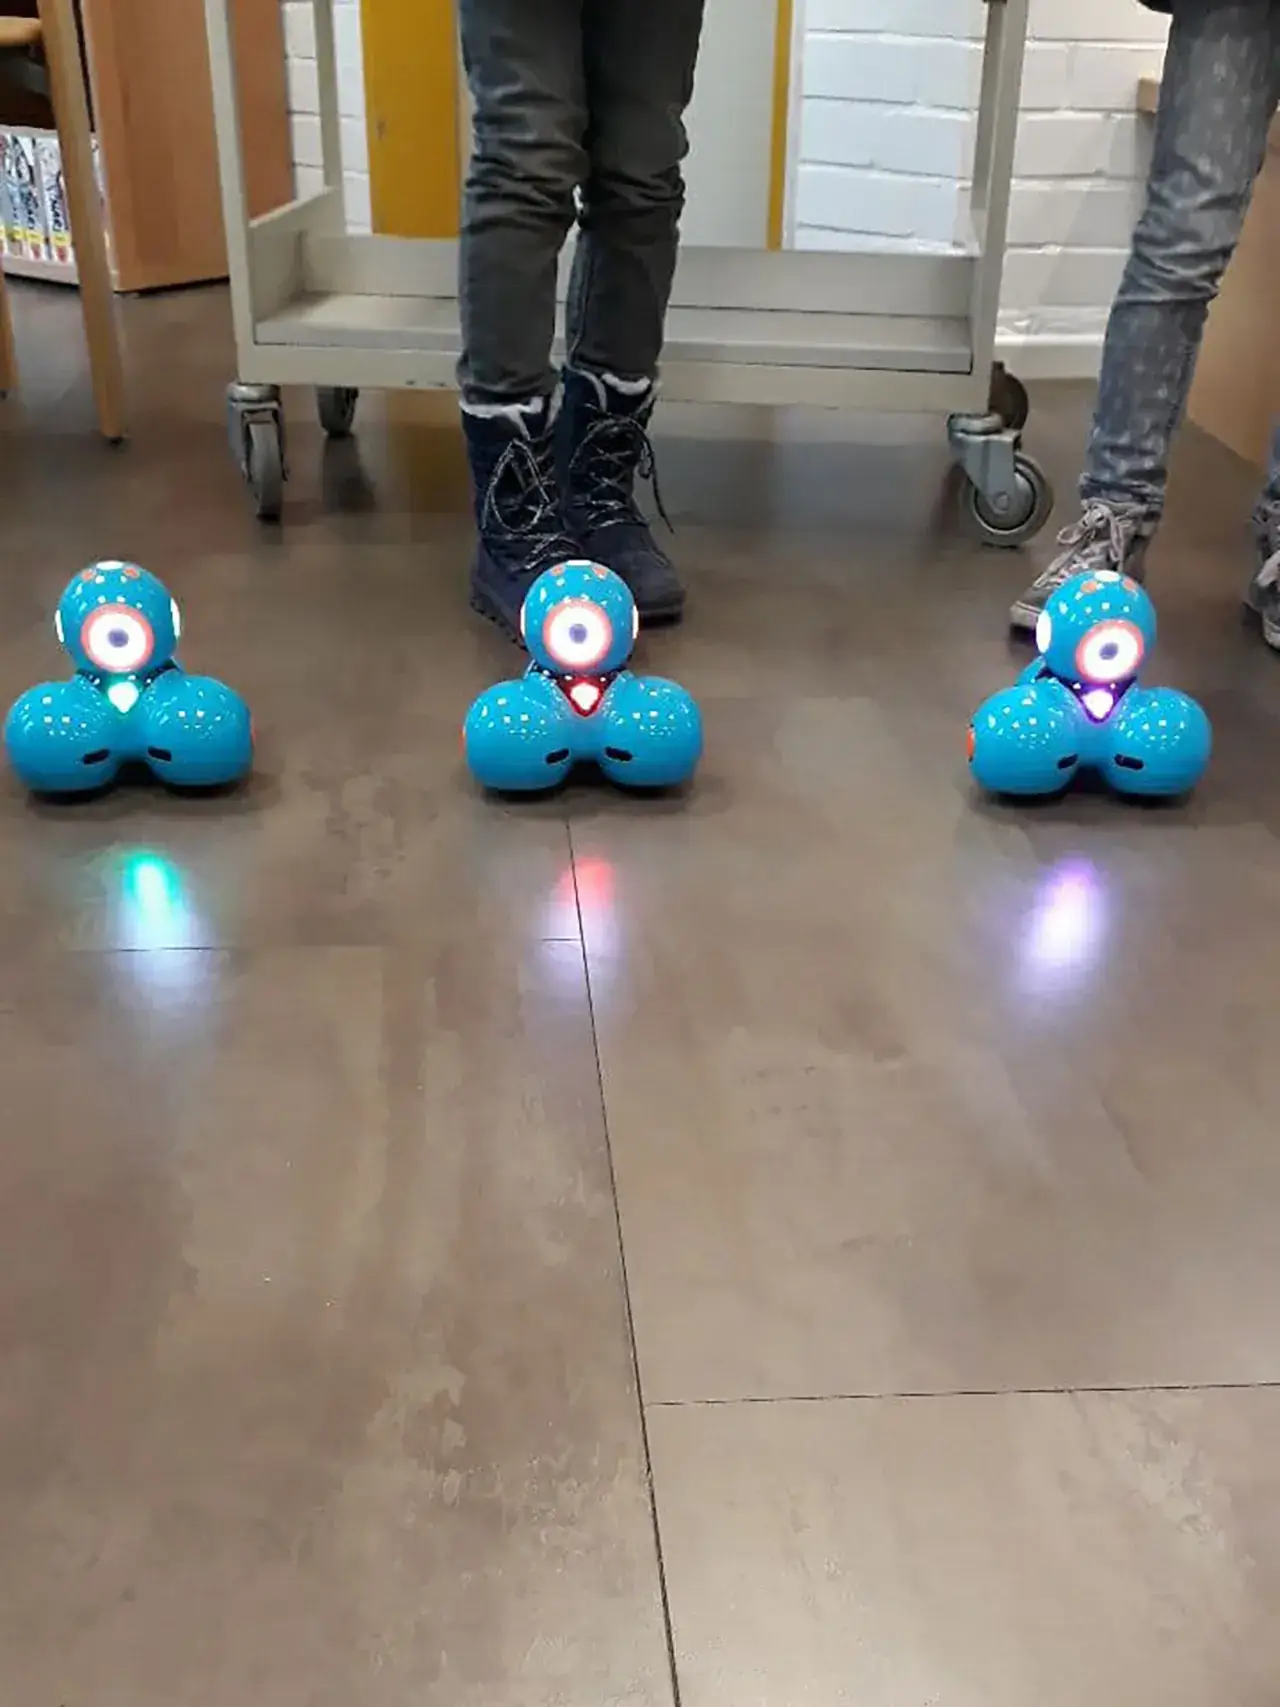 Projekte 2019 - Makerboxen - Makerdays - Dash Roboter - Bild 2 von 2